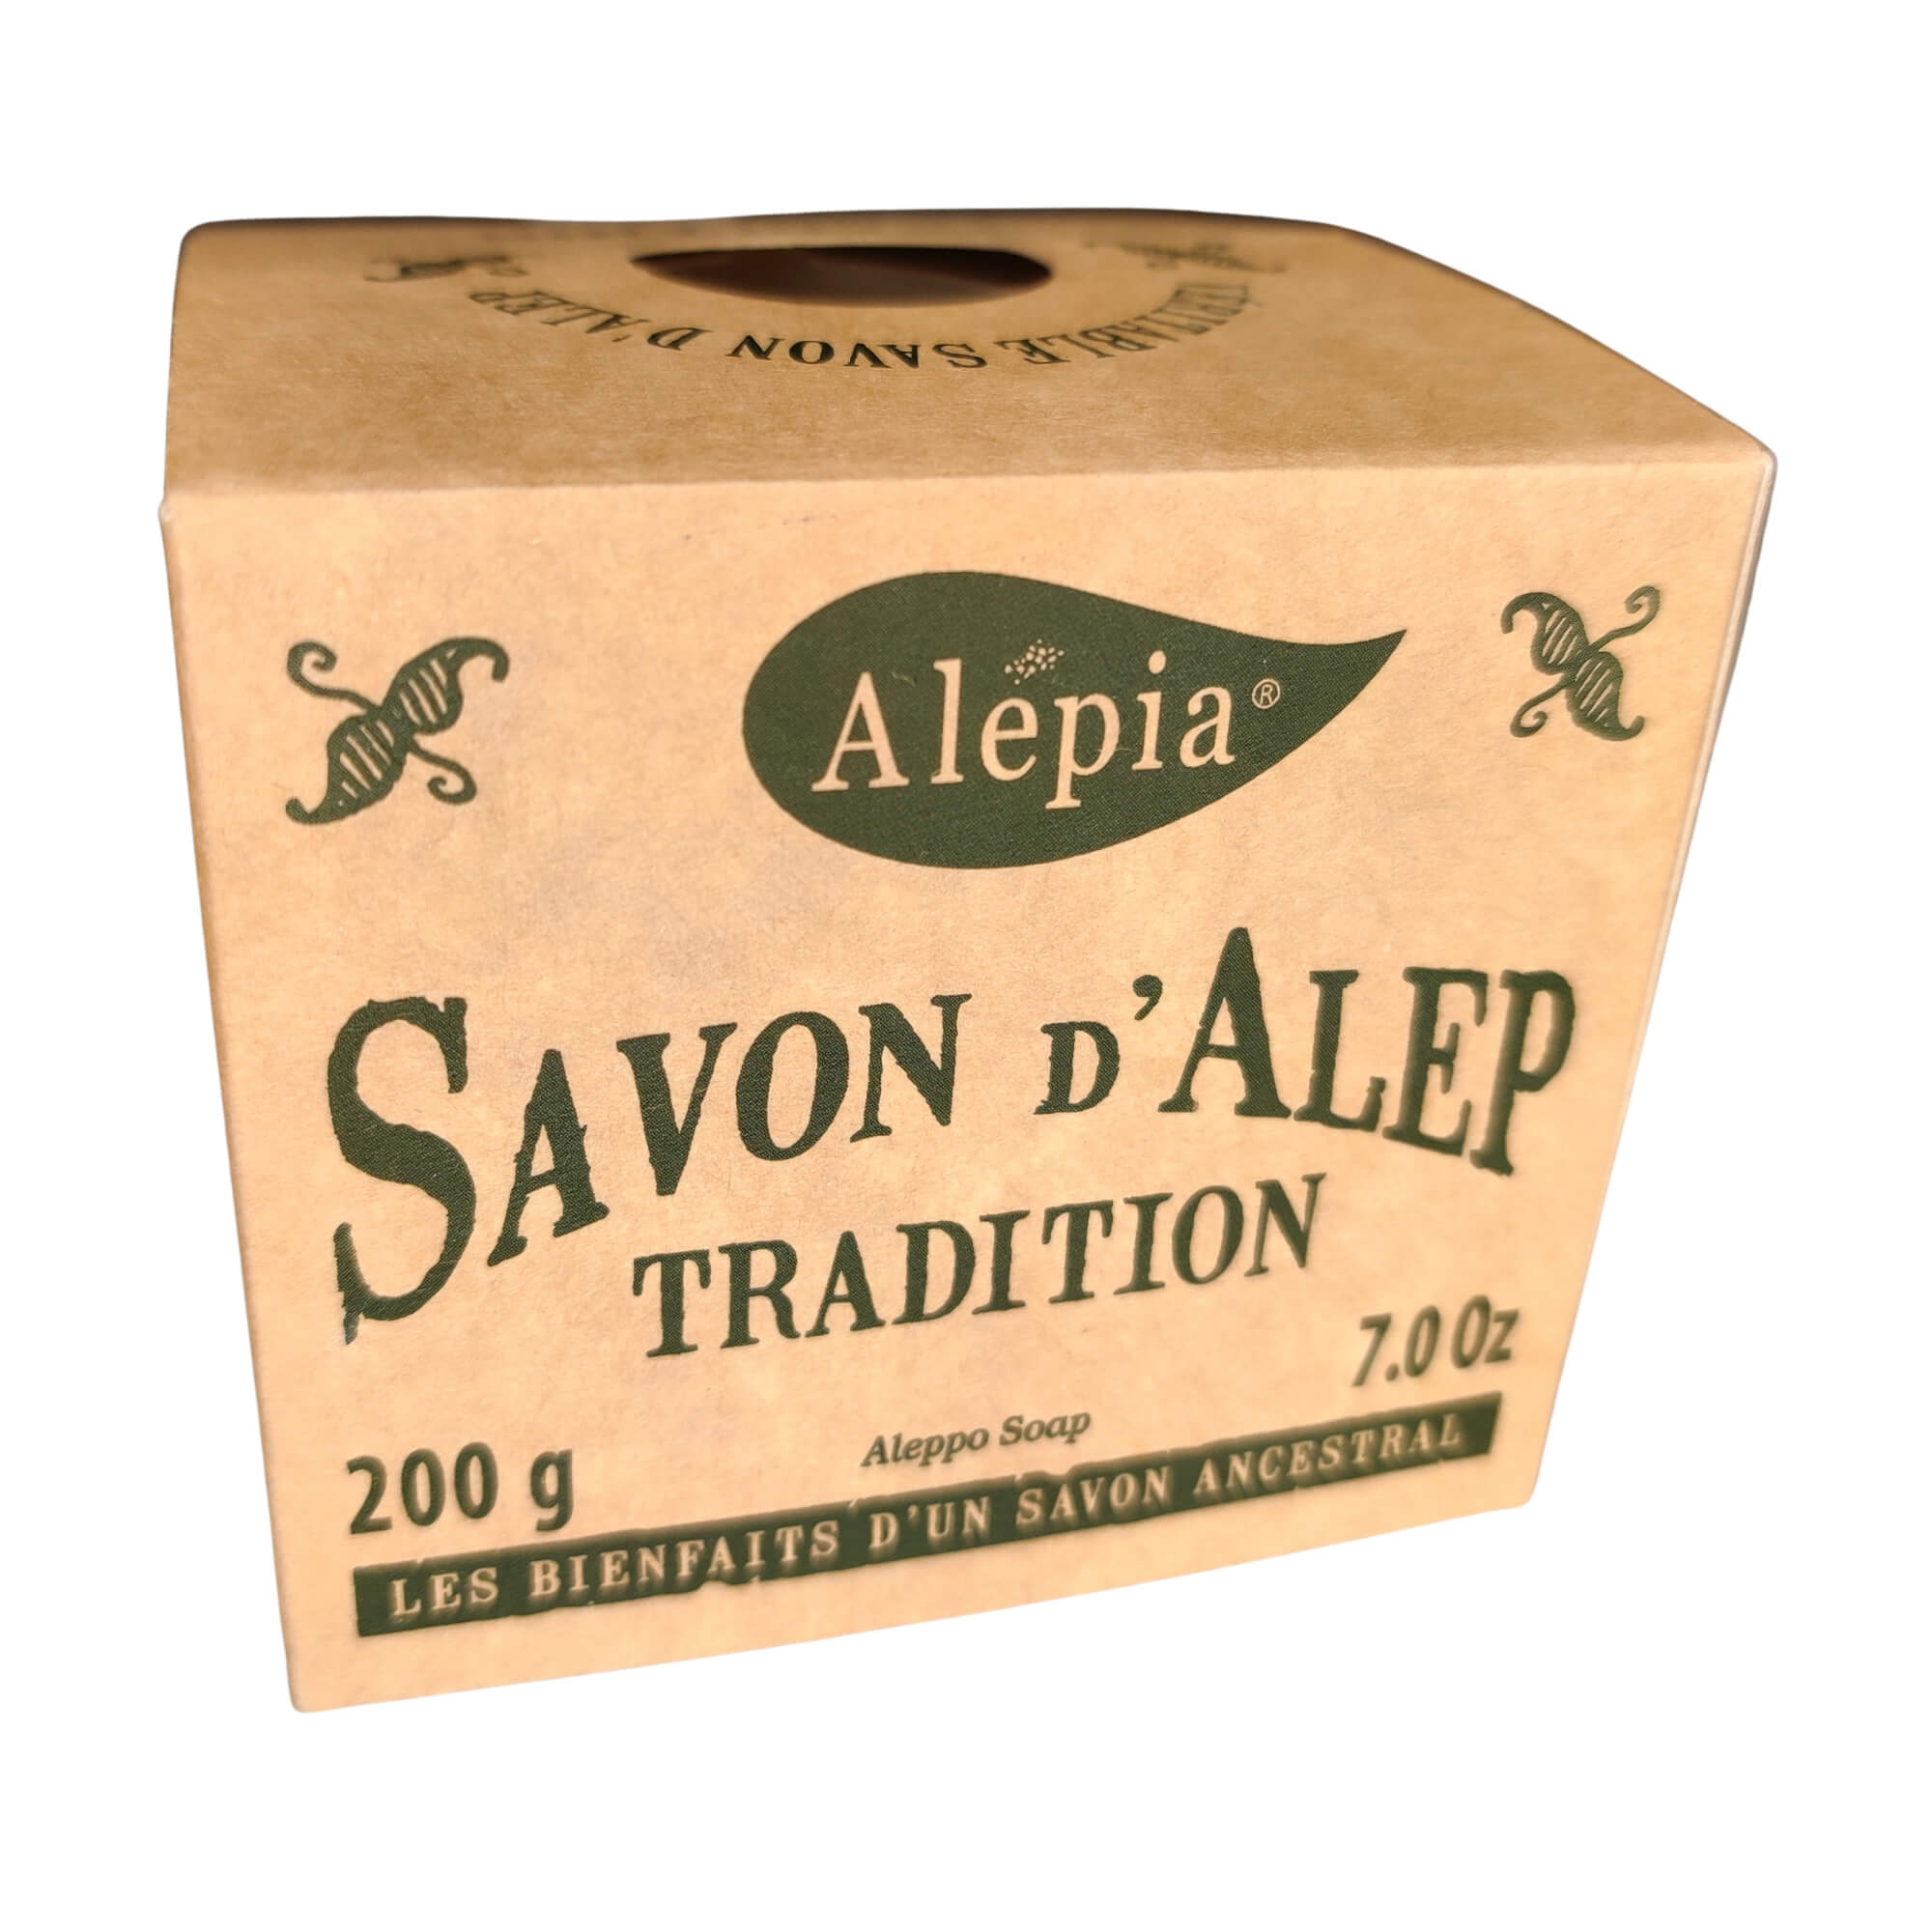 Mydło Aleppo 1% oleju laurowego tradycyjne 200 g - Alepia